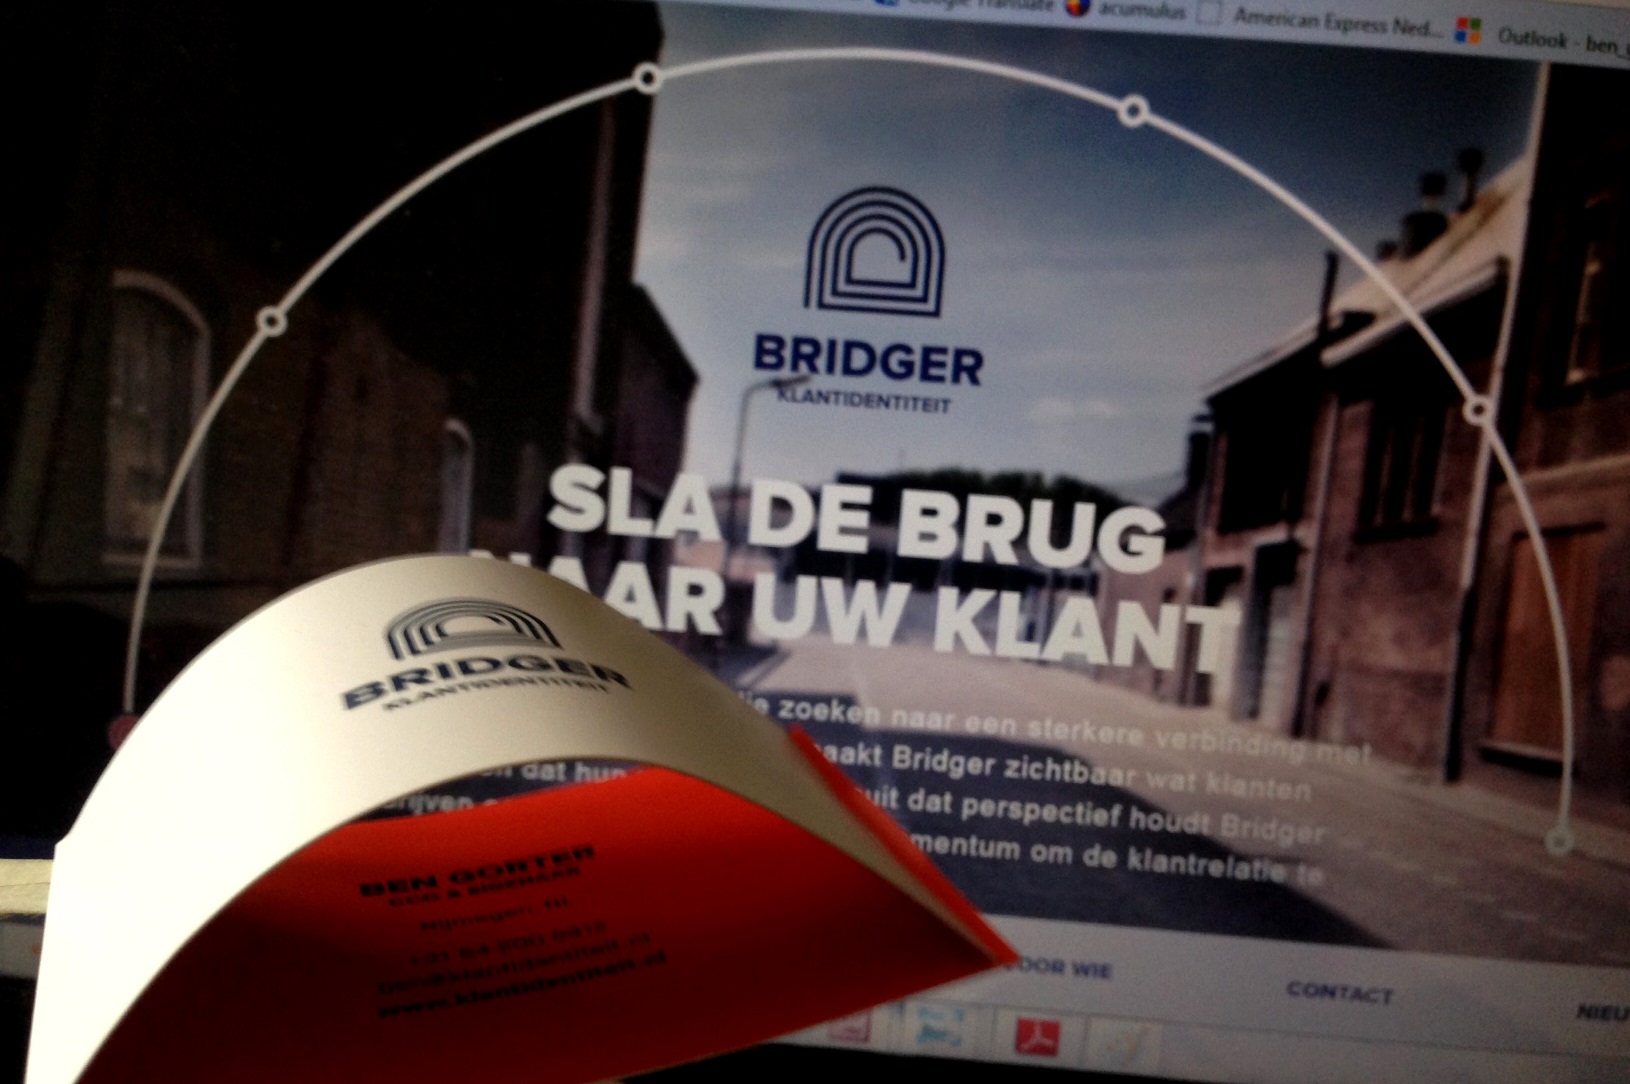 Bridger website launch